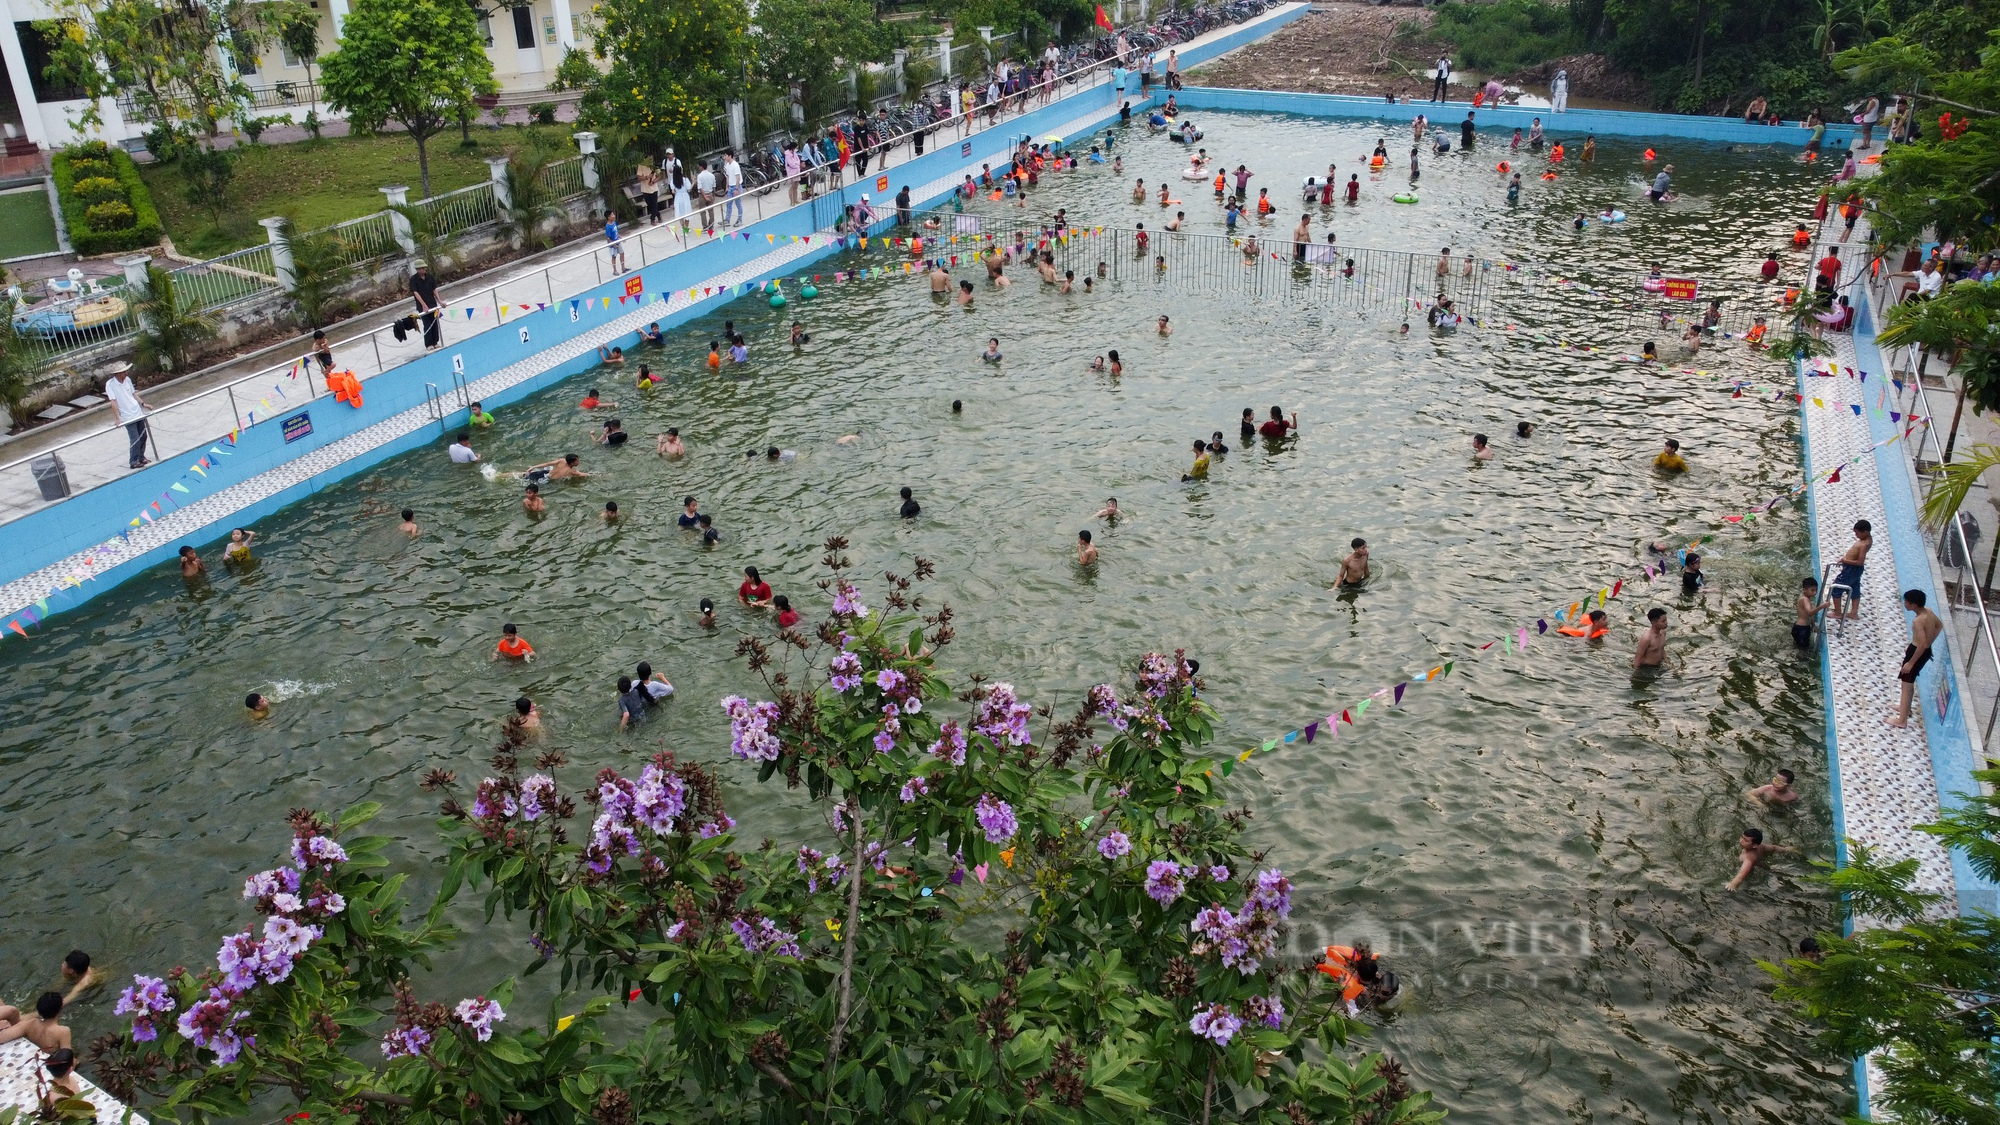 Biến ao làng thành bể bơi miễn phí, trẻ em thích thú tắm giải nhiệt ngày nắng nóng - Ảnh 5.